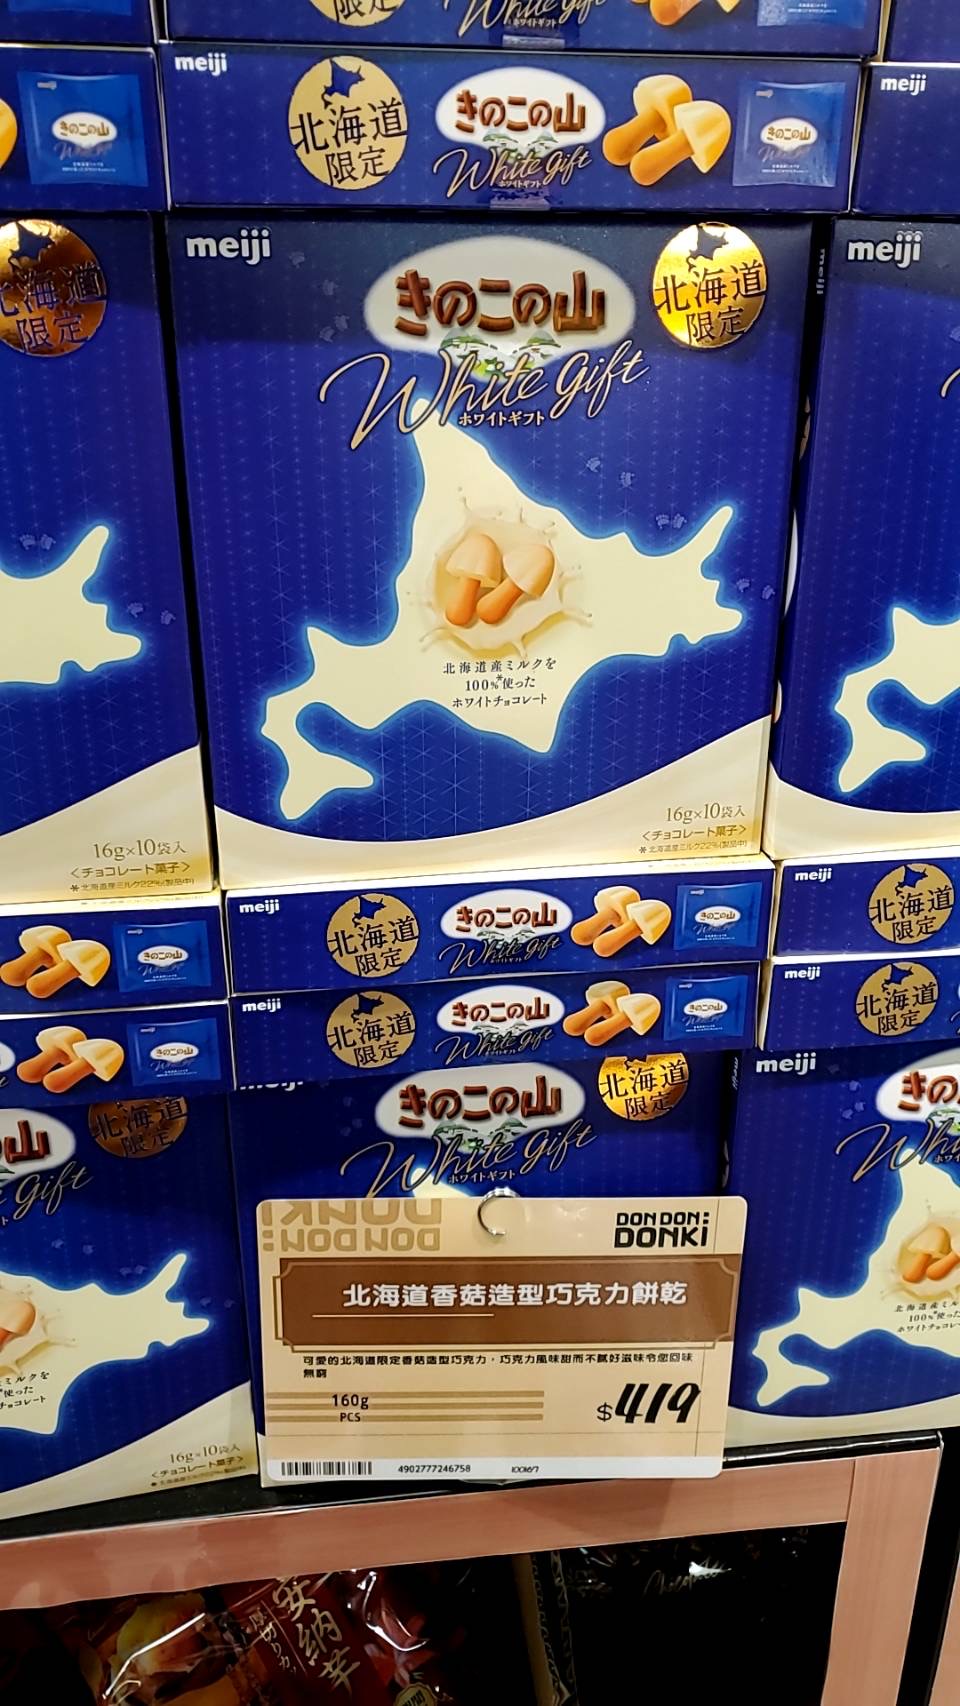 唐吉軻德忠孝新生店北海道香菇巧克力